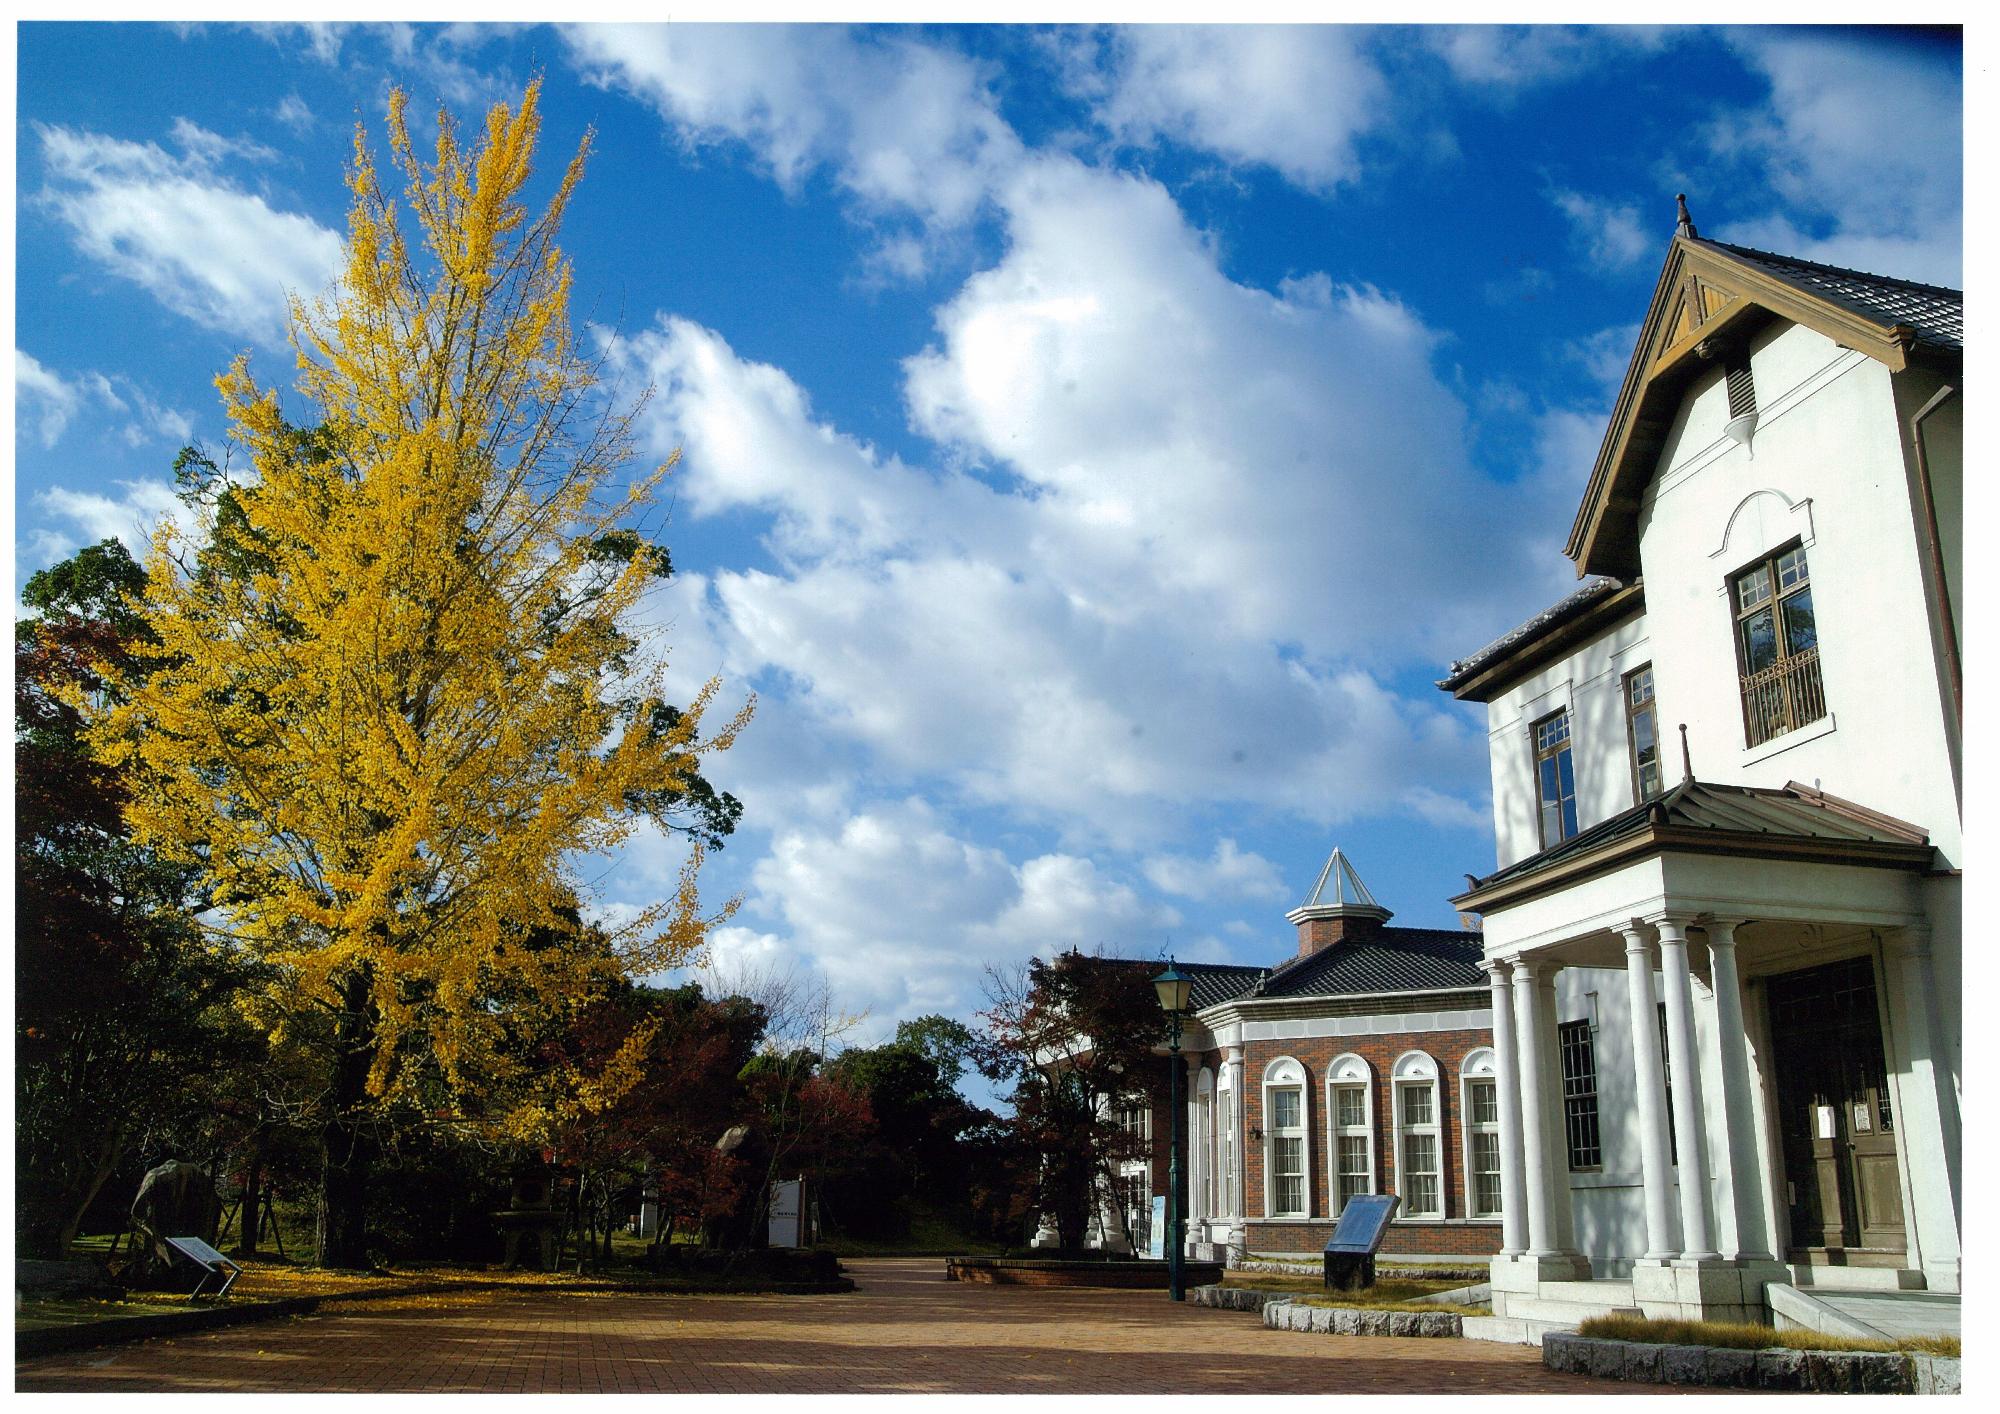 イチョウの木と伊藤公資料館と旧伊藤博文邸の写真